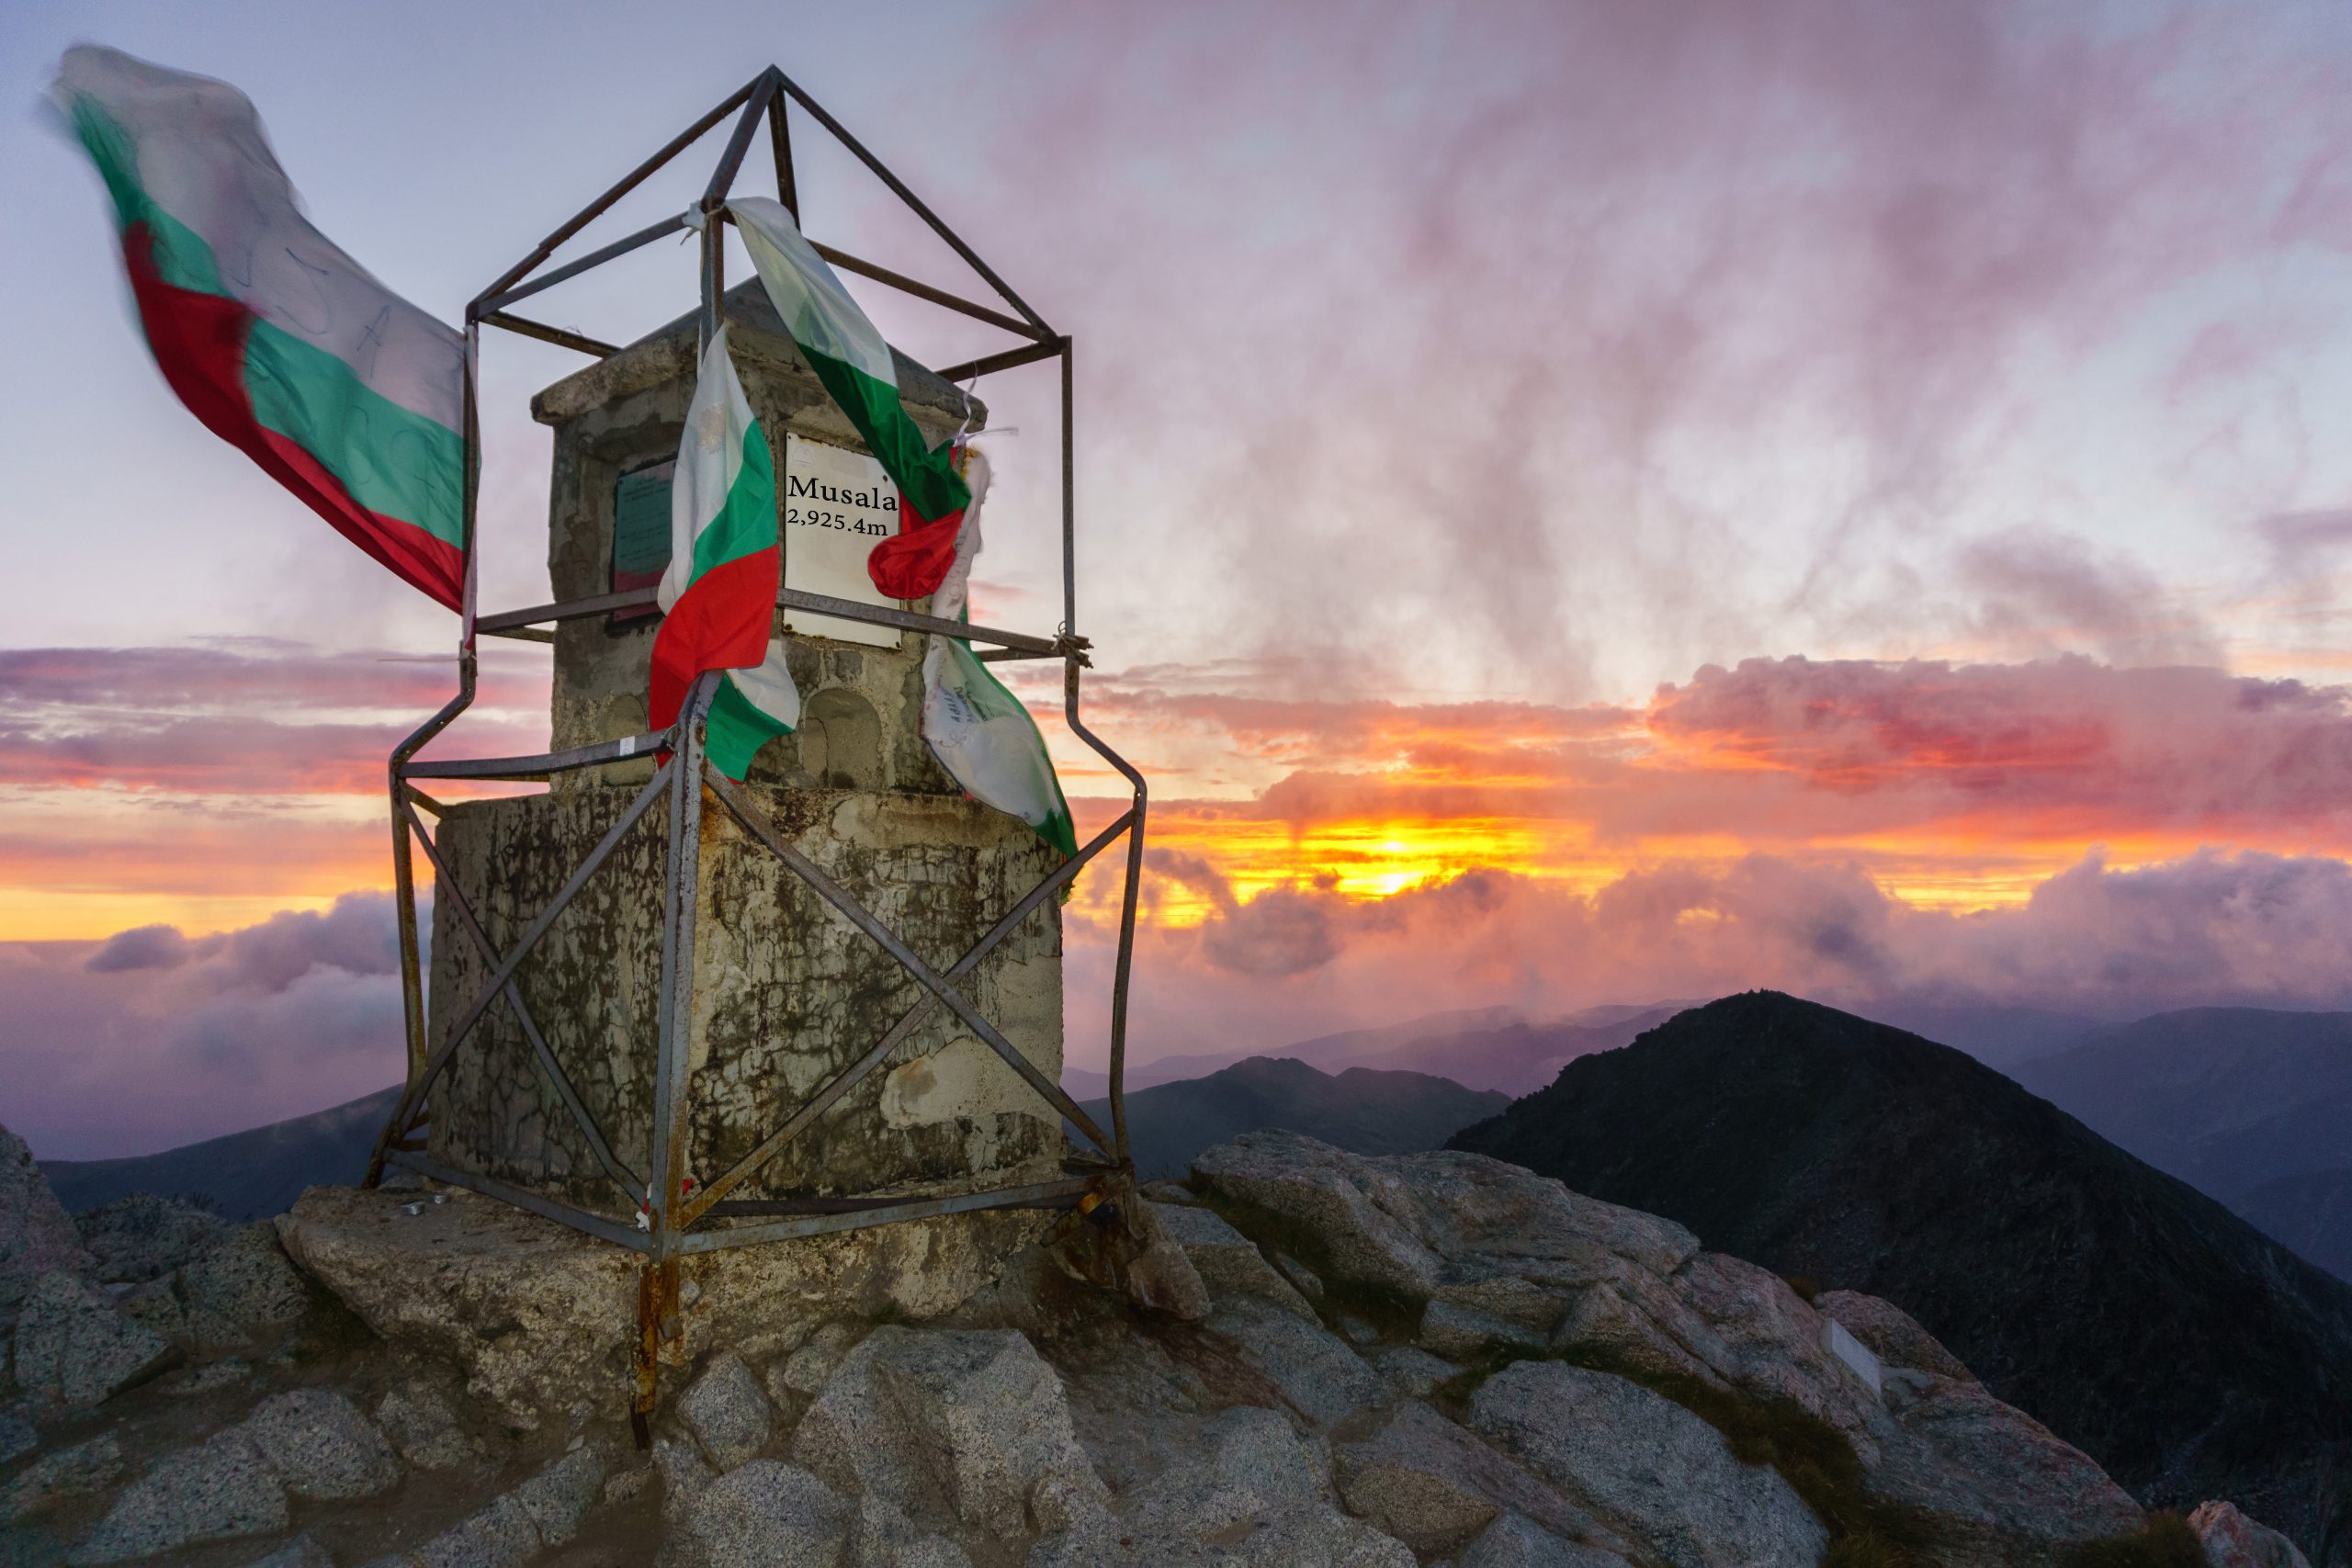 Korona Bałkanów – Musała – wszystko o najwyższym szczycie Bułgarii